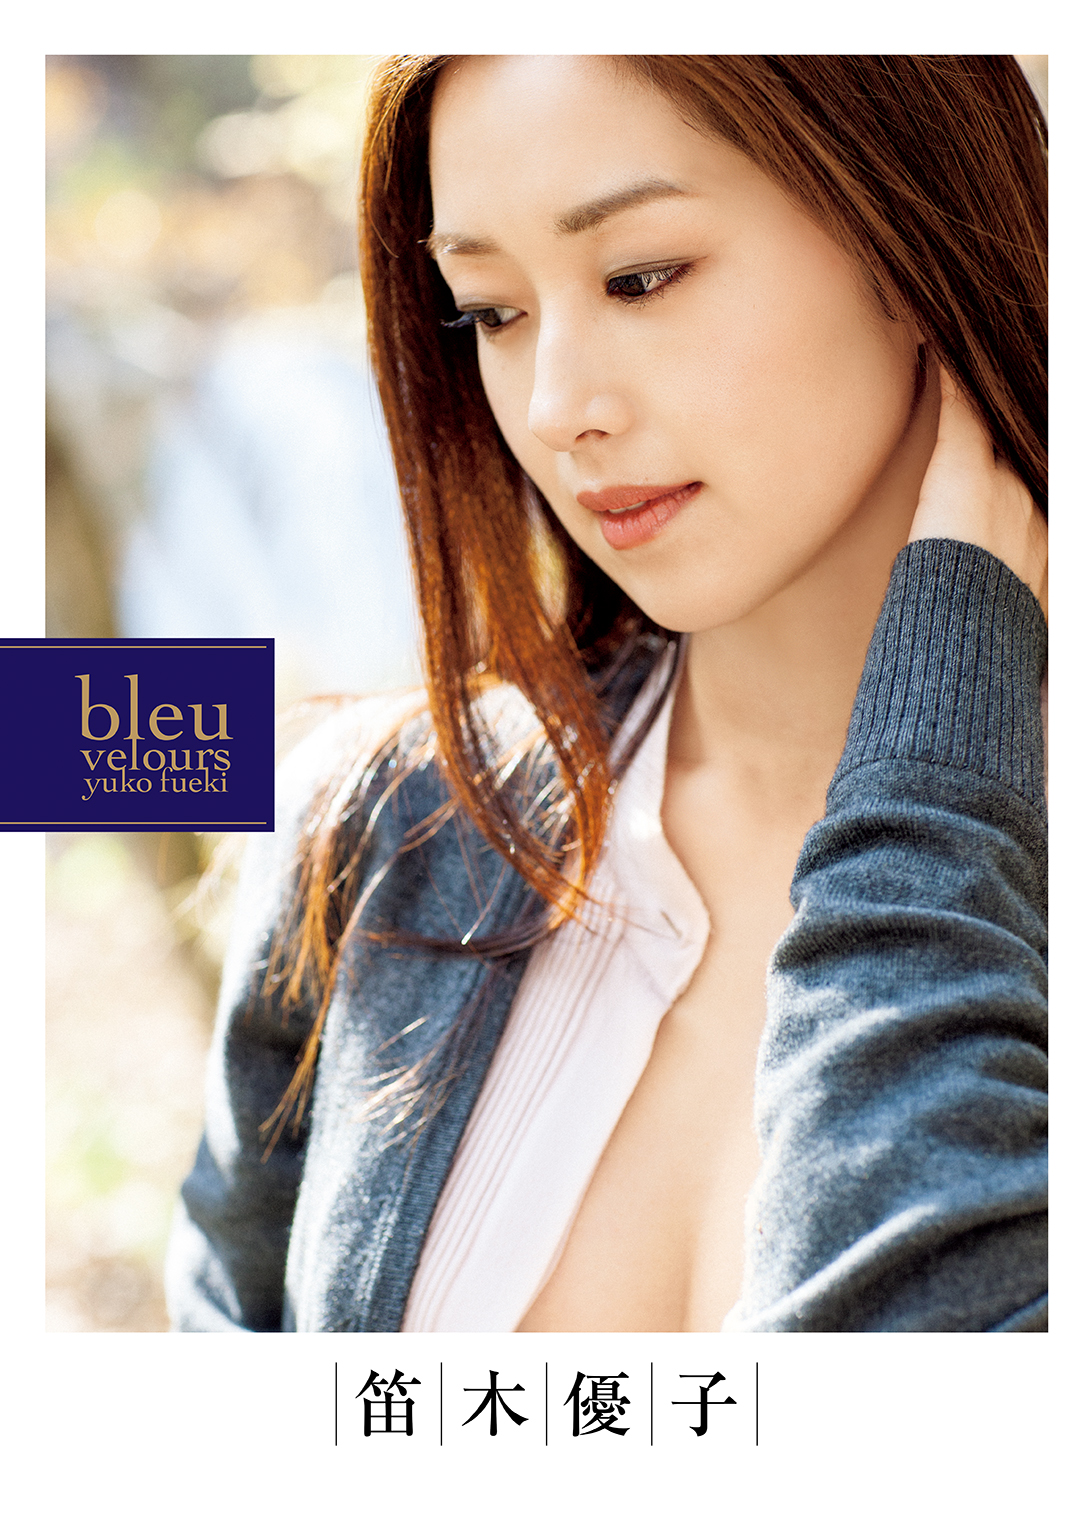 笛木優子写真集『bleu velours』(写真集) - 電子書籍 | U-NEXT 初回600 